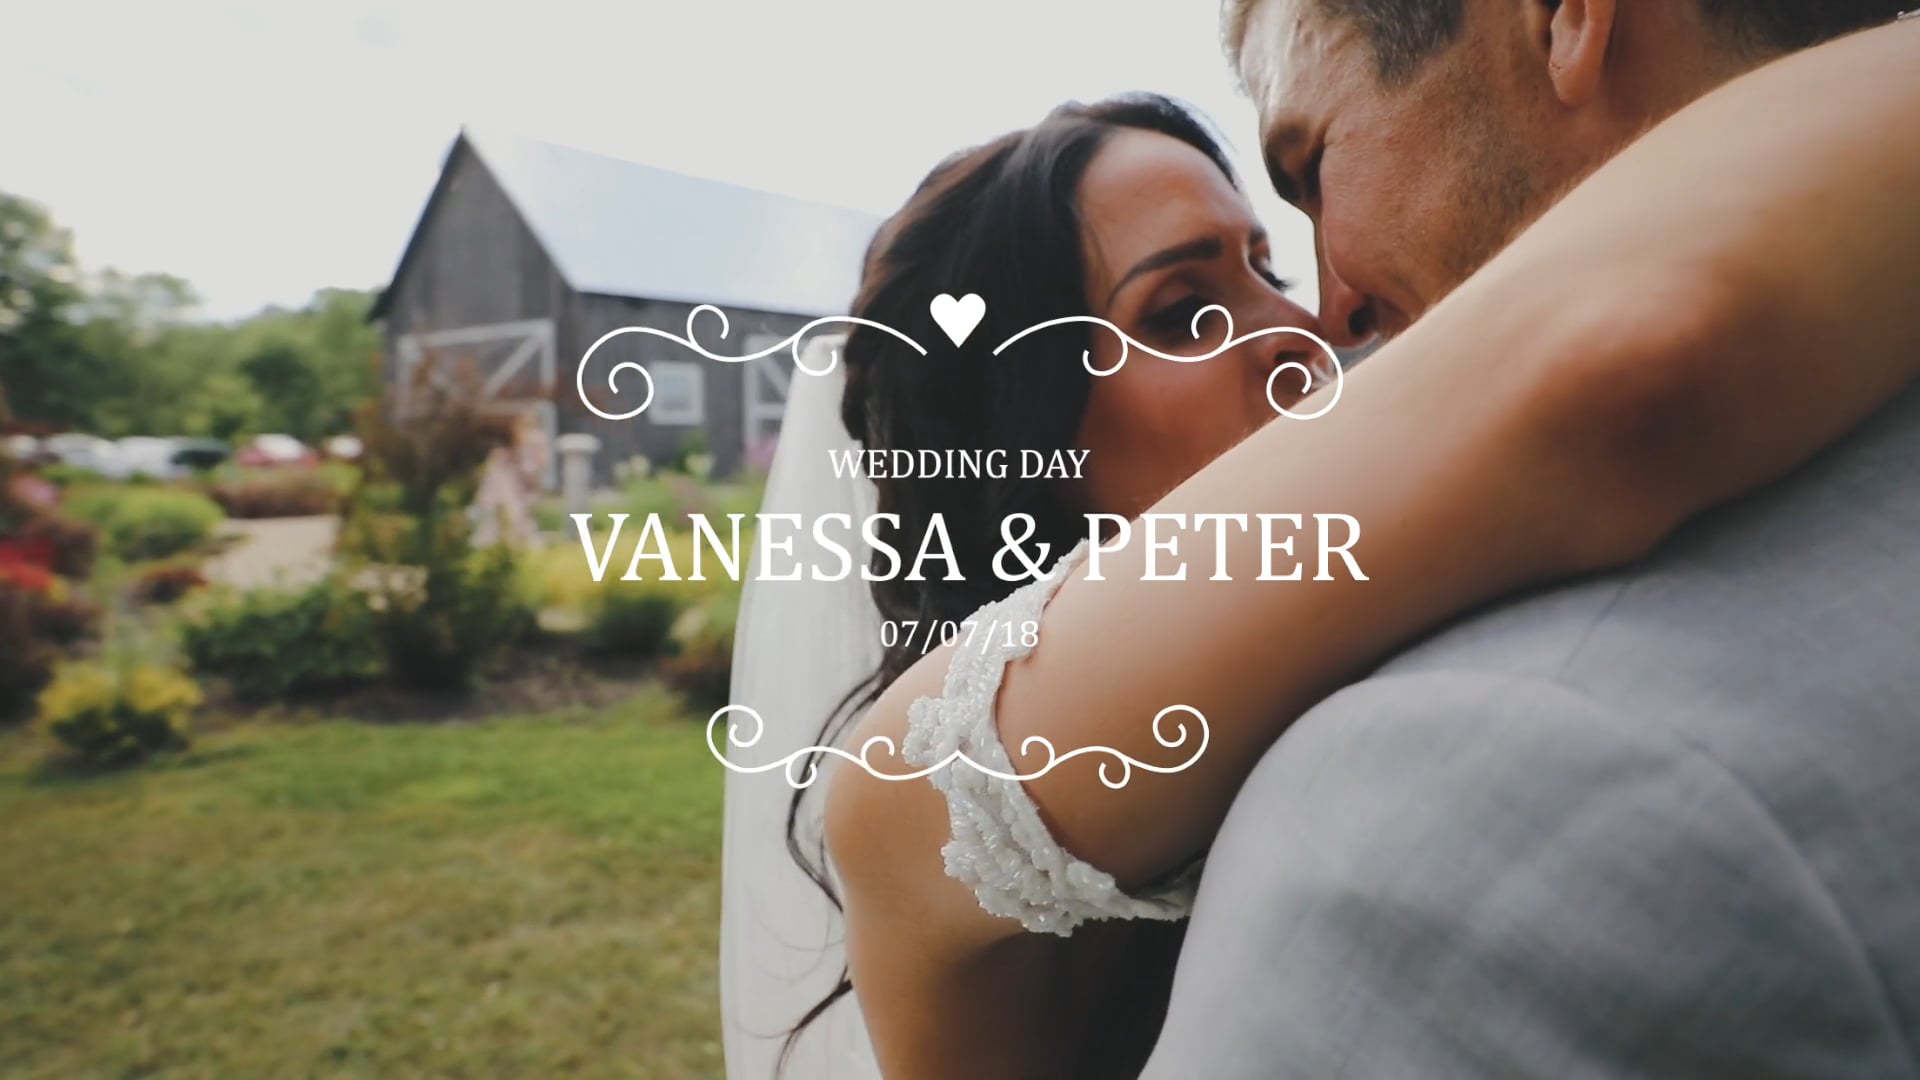 Vanessa & Peter's Wedding Film